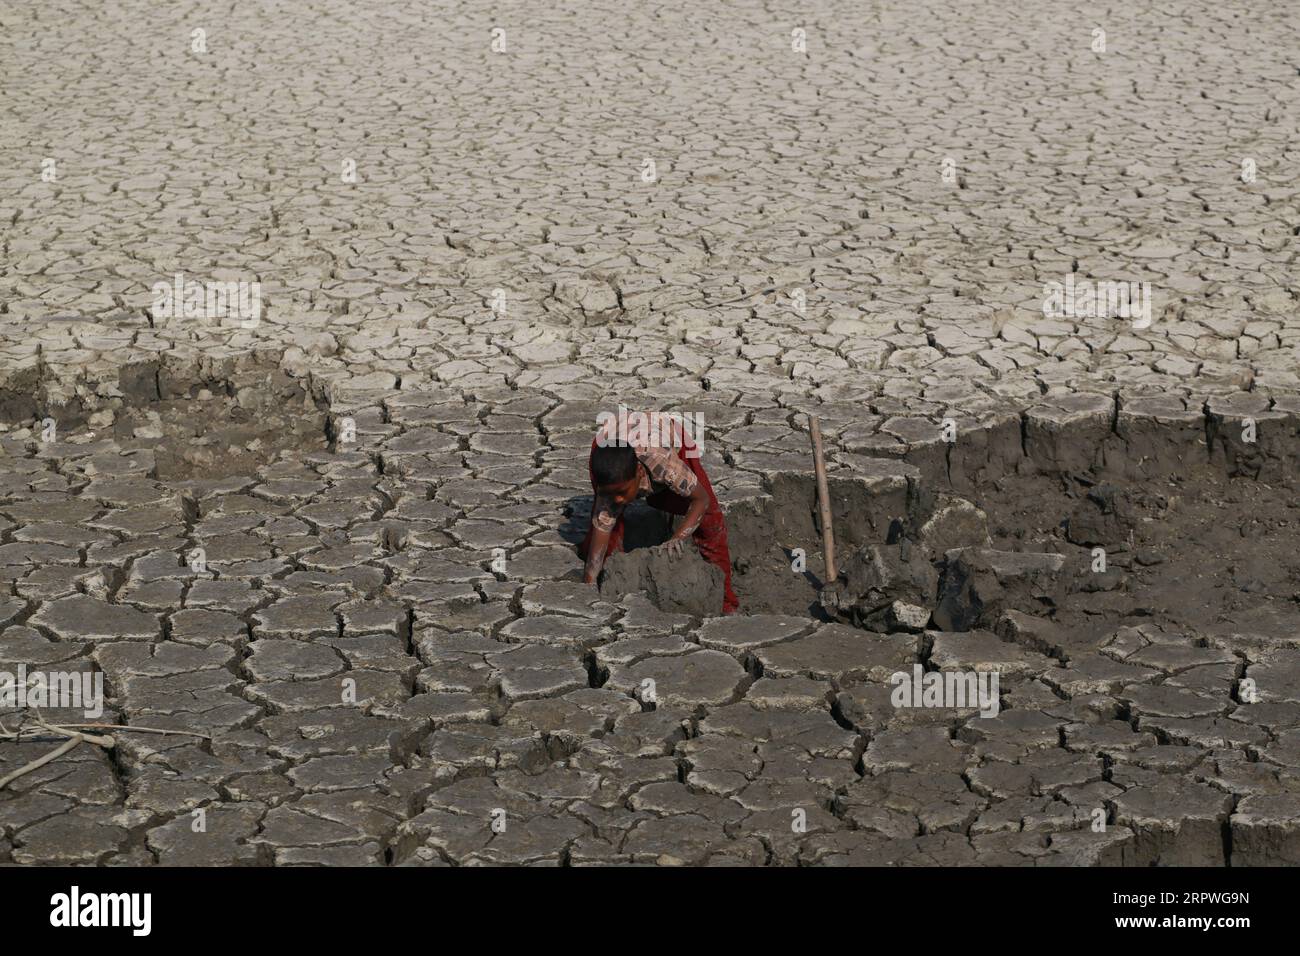 Un enfant travaille alors qu’il répare le barrage après qu’un cyclone ait frappé les zones côtières du Bangladesh le 5 janvier 2021. Des millions de personnes sont touchées par la crise climatique dans les ceintures côtières du Bangladesh. Banque D'Images